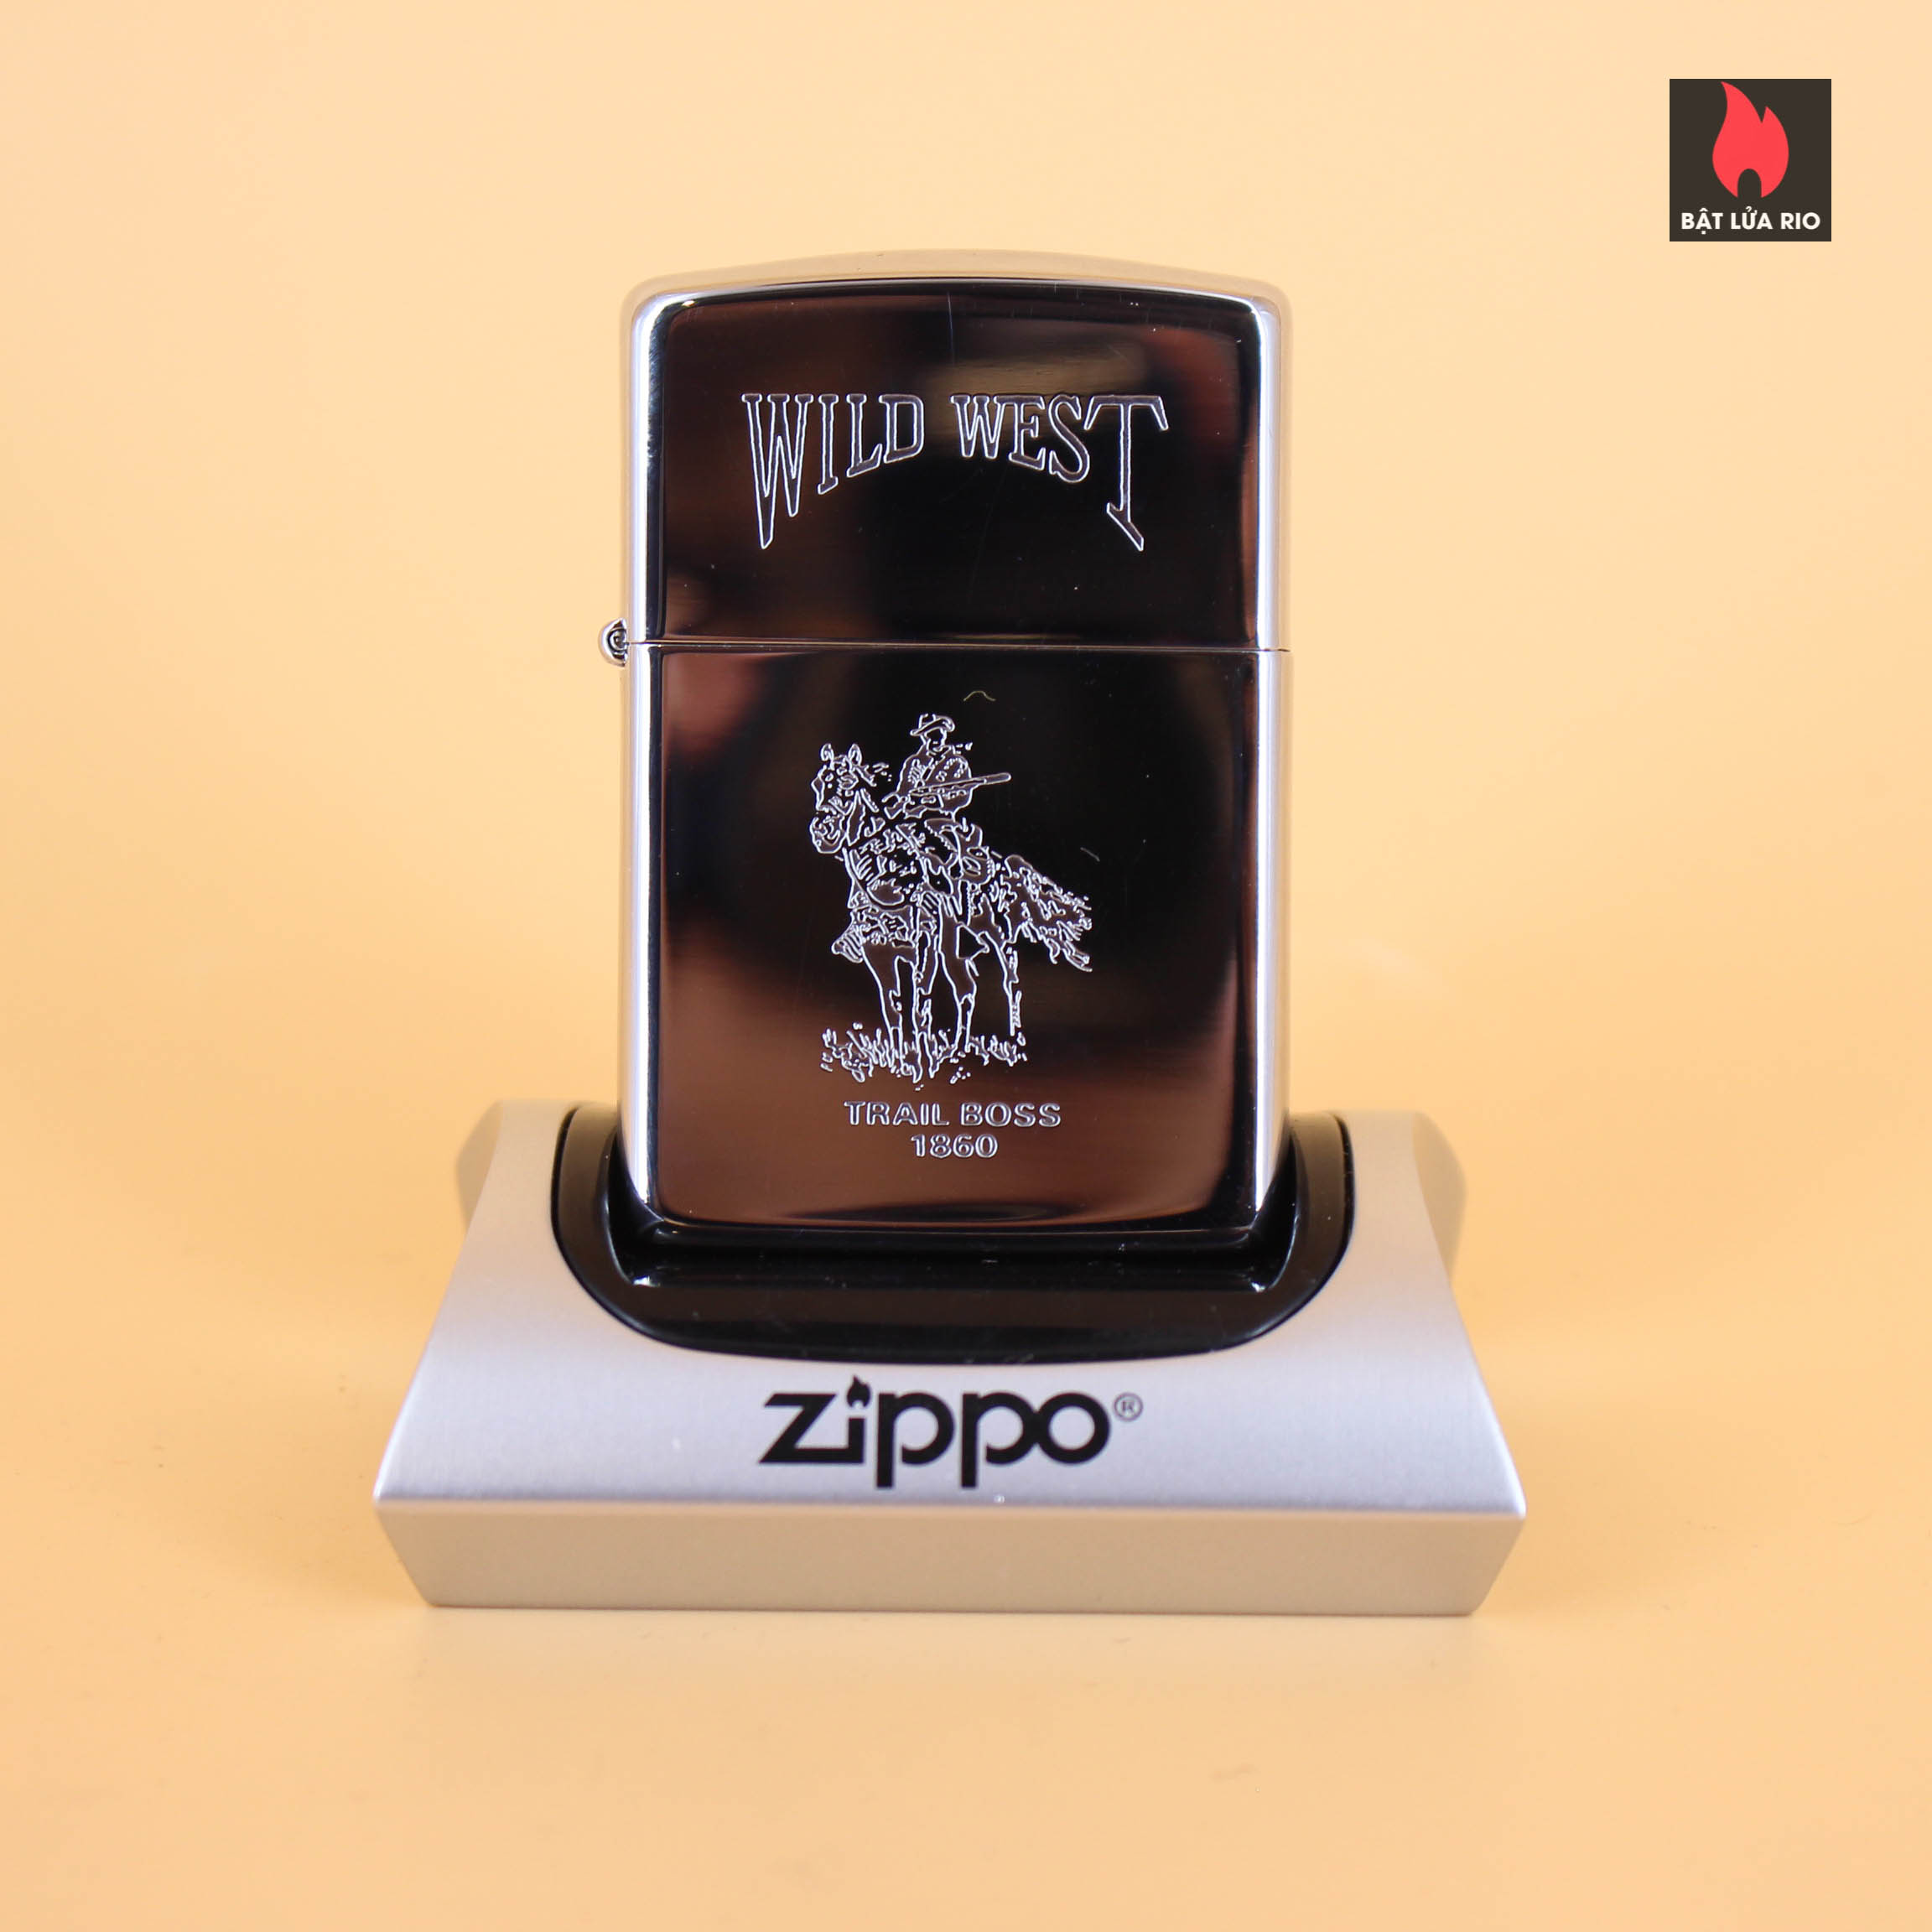 Zippo La Mã 1990 – Wild West Series – Trail Boss 1860 2